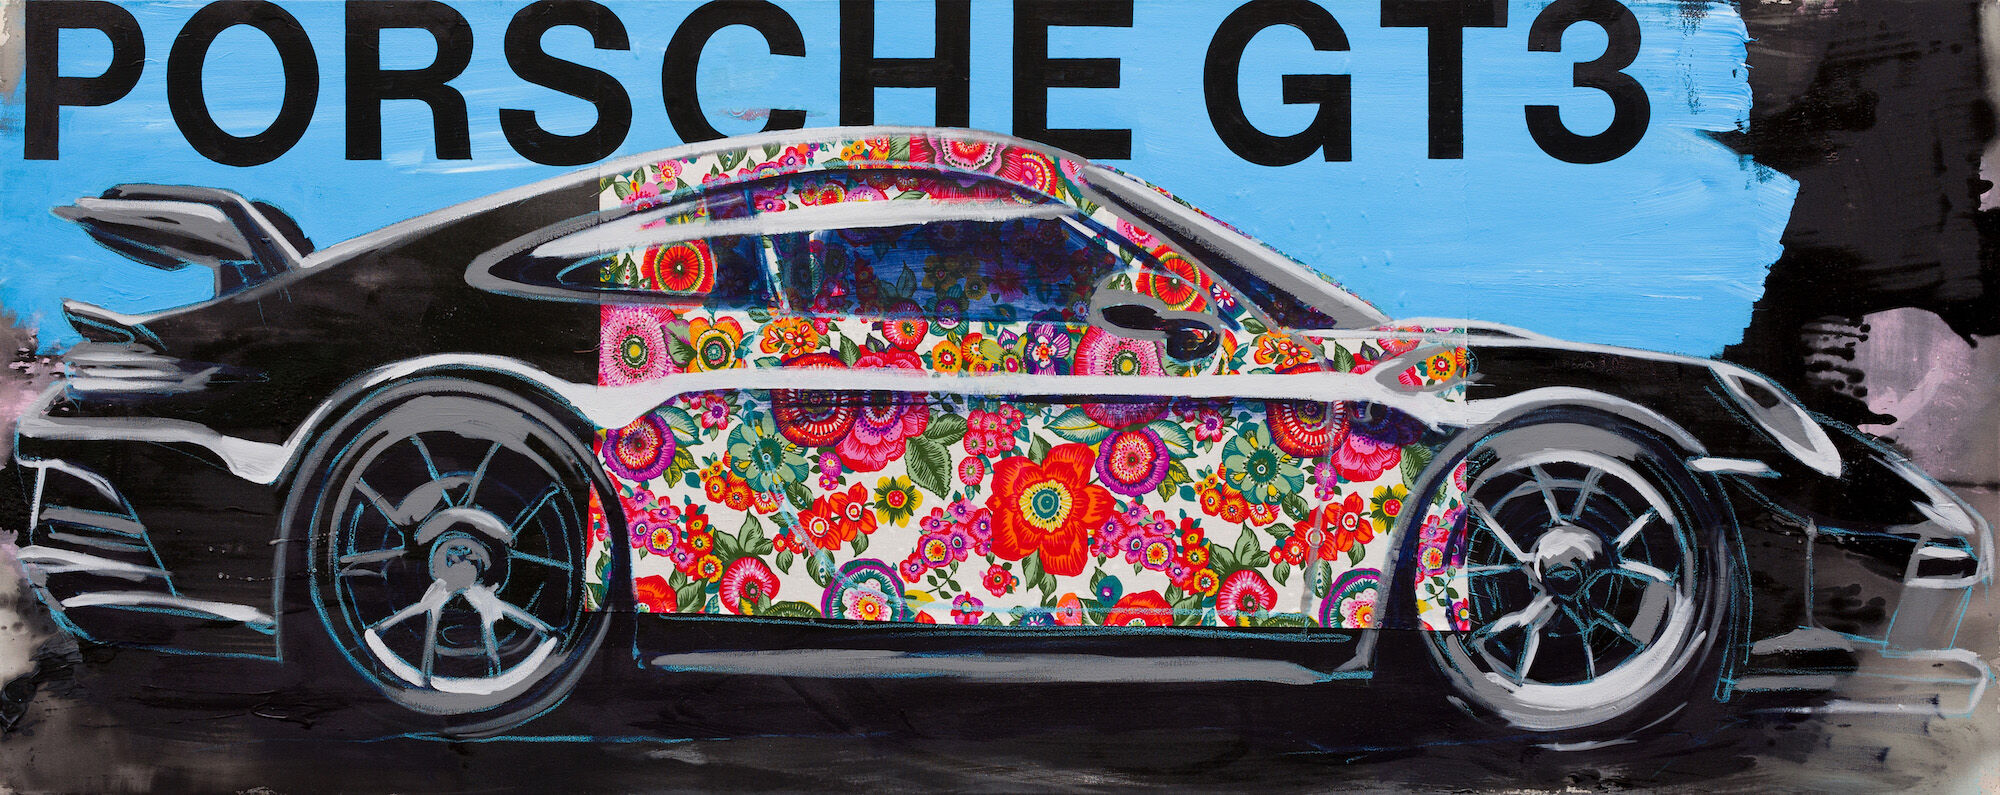 Bild "Porsche GT3" (2022) (Unikt exemplar) von Stephan Geisler